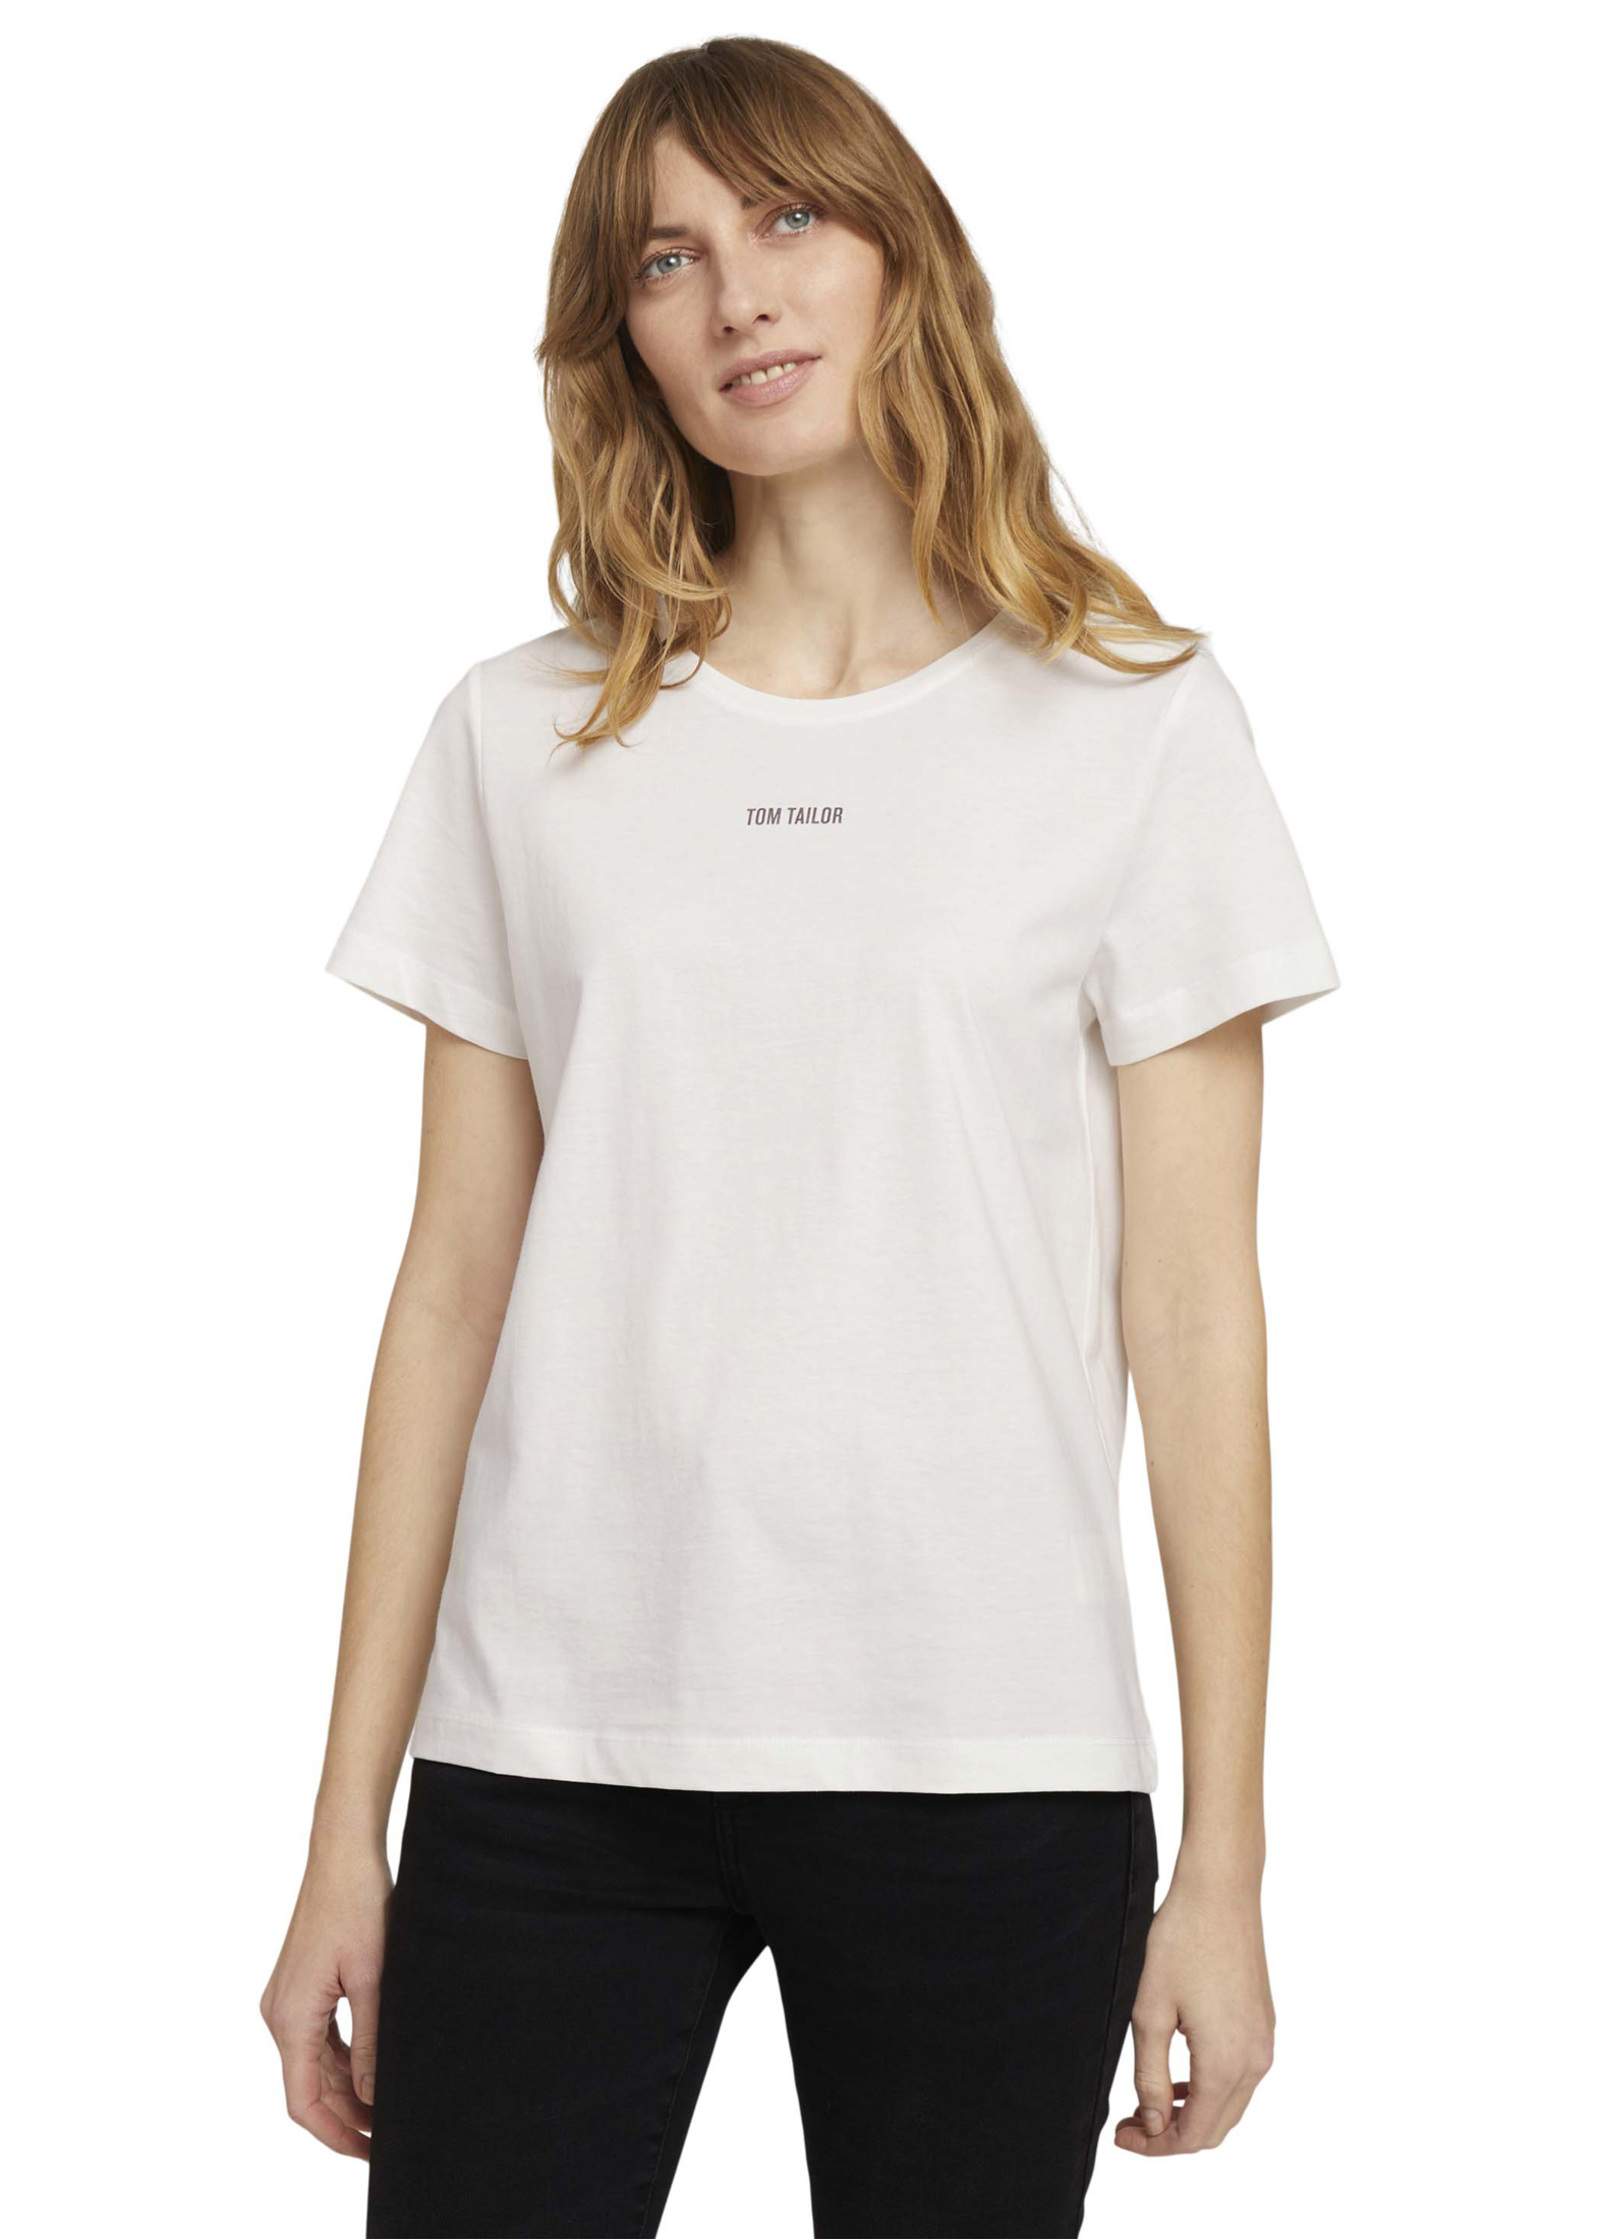 Tshirt Logo Whisper White C-neck 3XL Tailor® Size Tom -